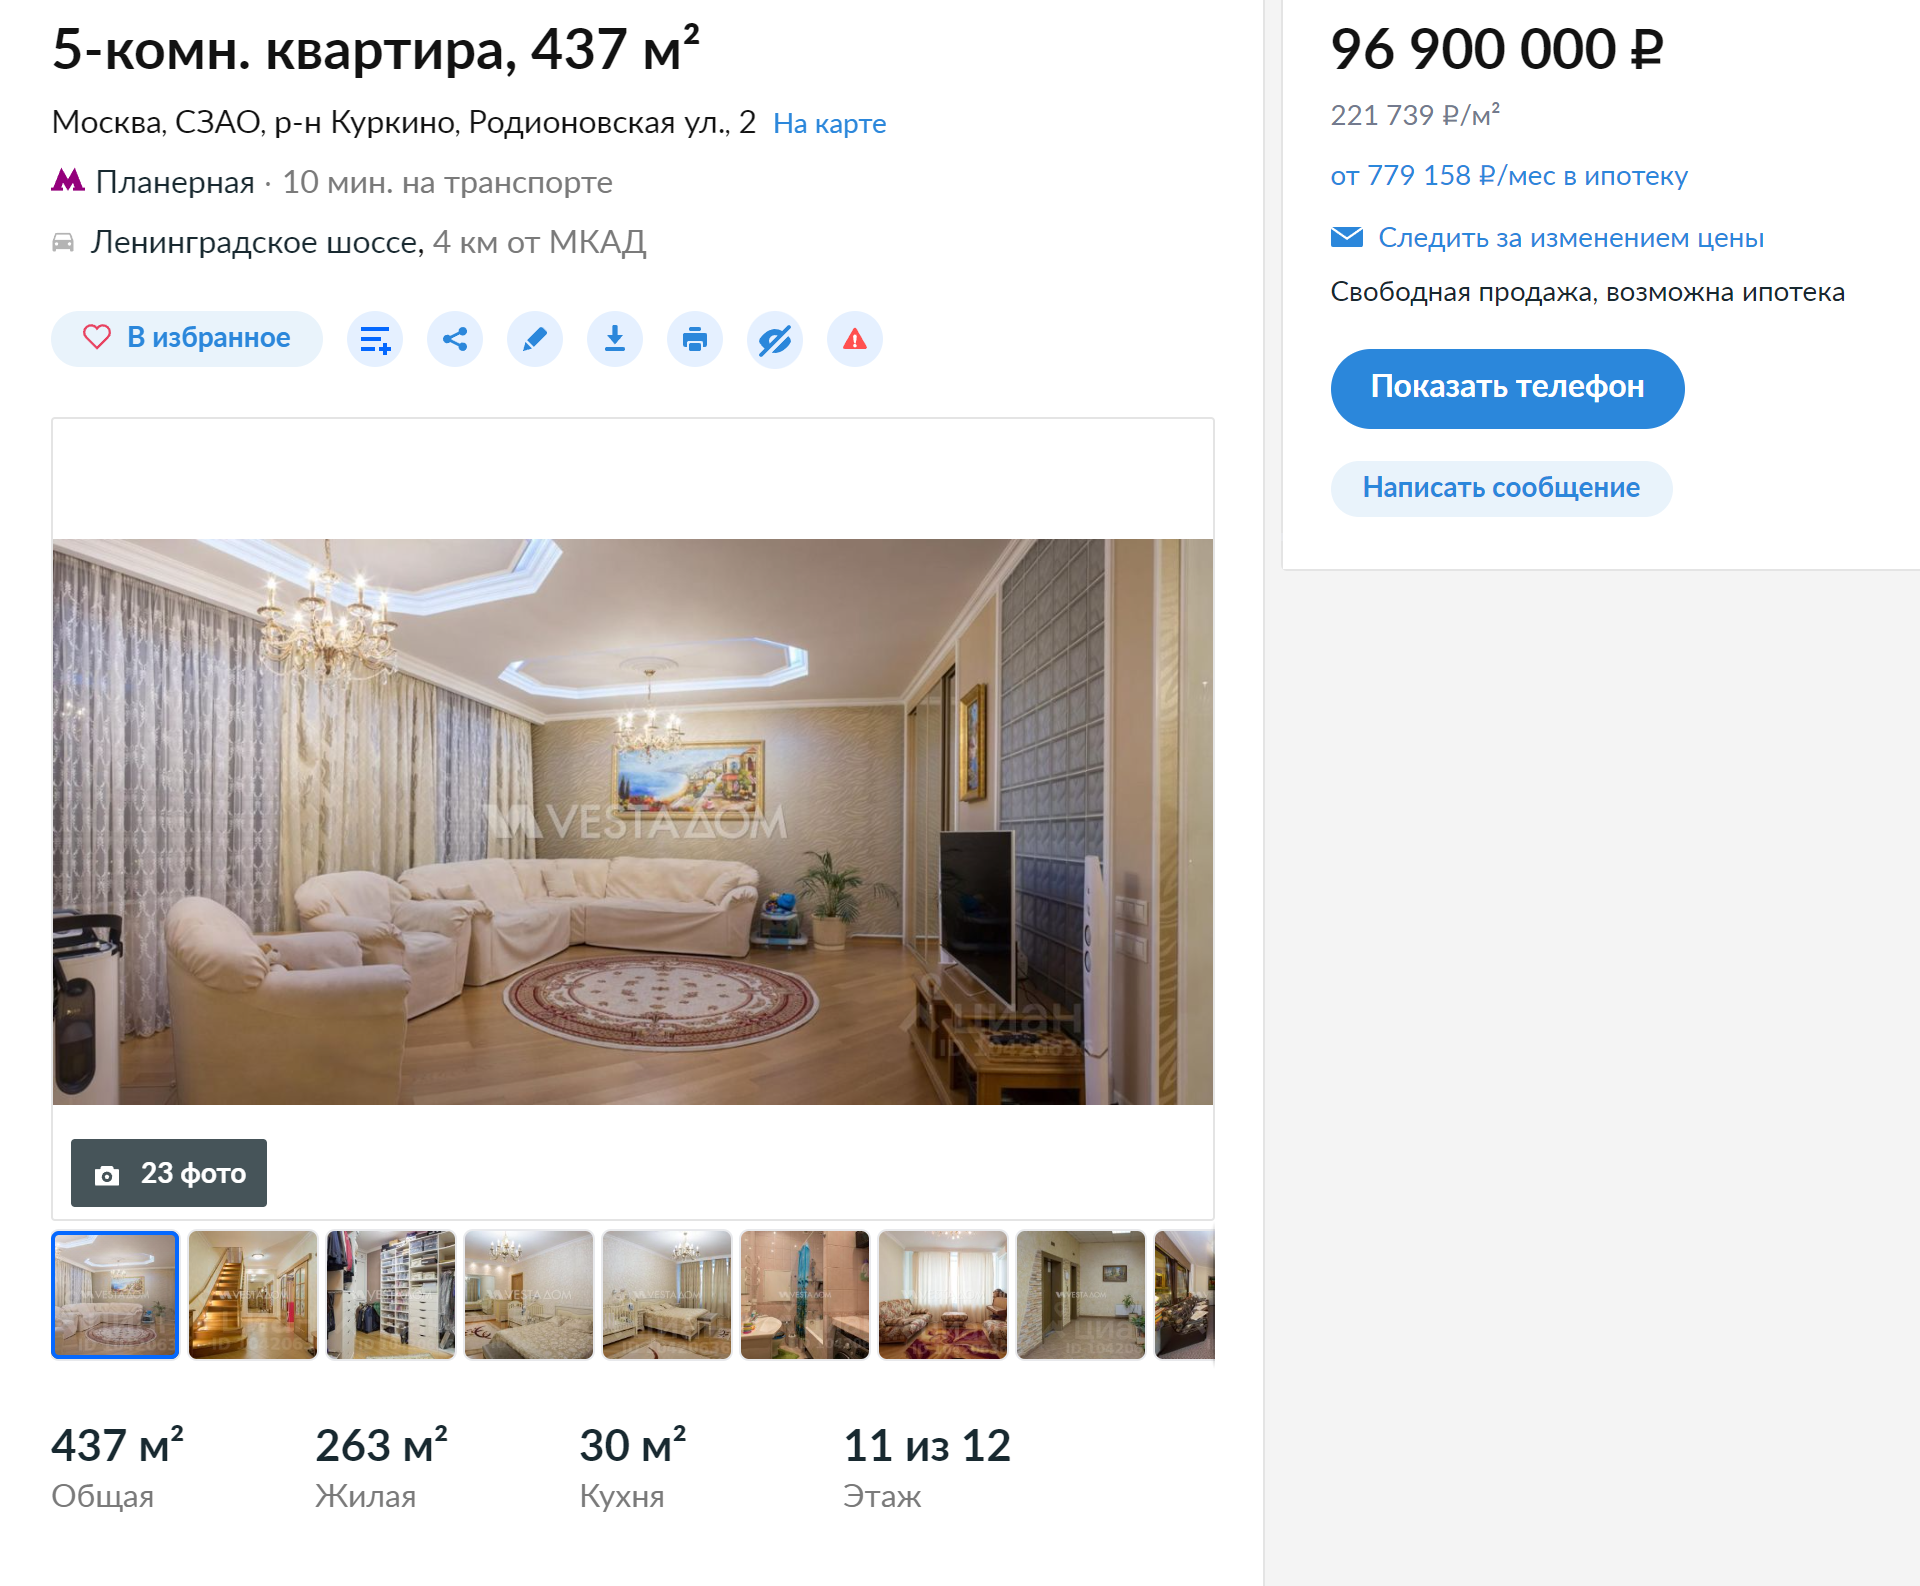 Самая дорогая квартира из выставленных на продажу. Источник: cian.ru